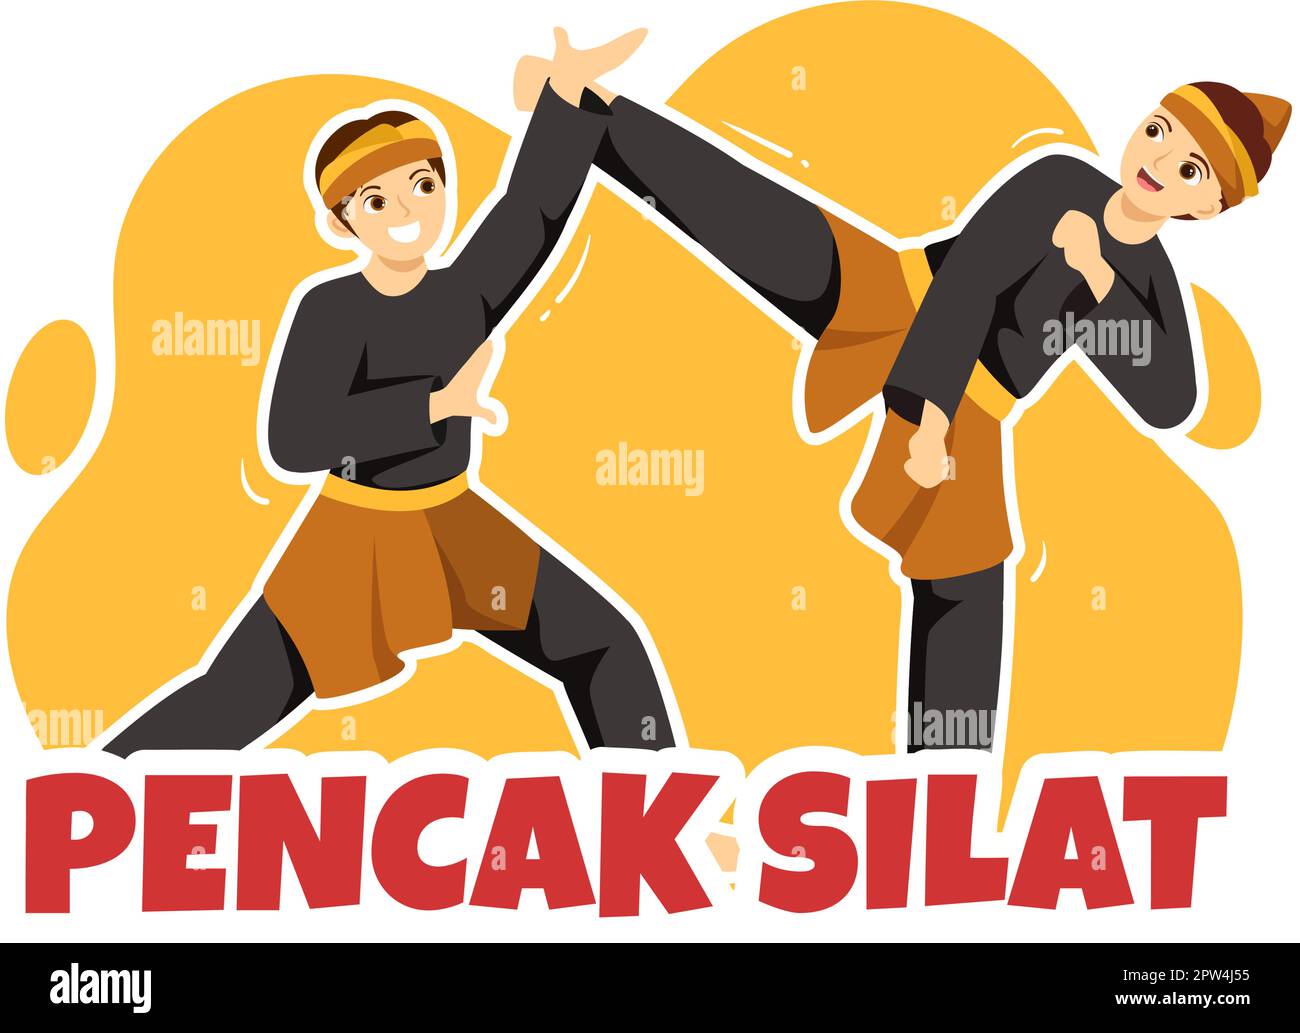 Pencak Silat Sport Illustration mit Menschen posieren Martial Artist aus Indonesien für Webbanner oder Landing Page in flachen, handgezeichneten Cartoon-Vorlagen Stock Vektor